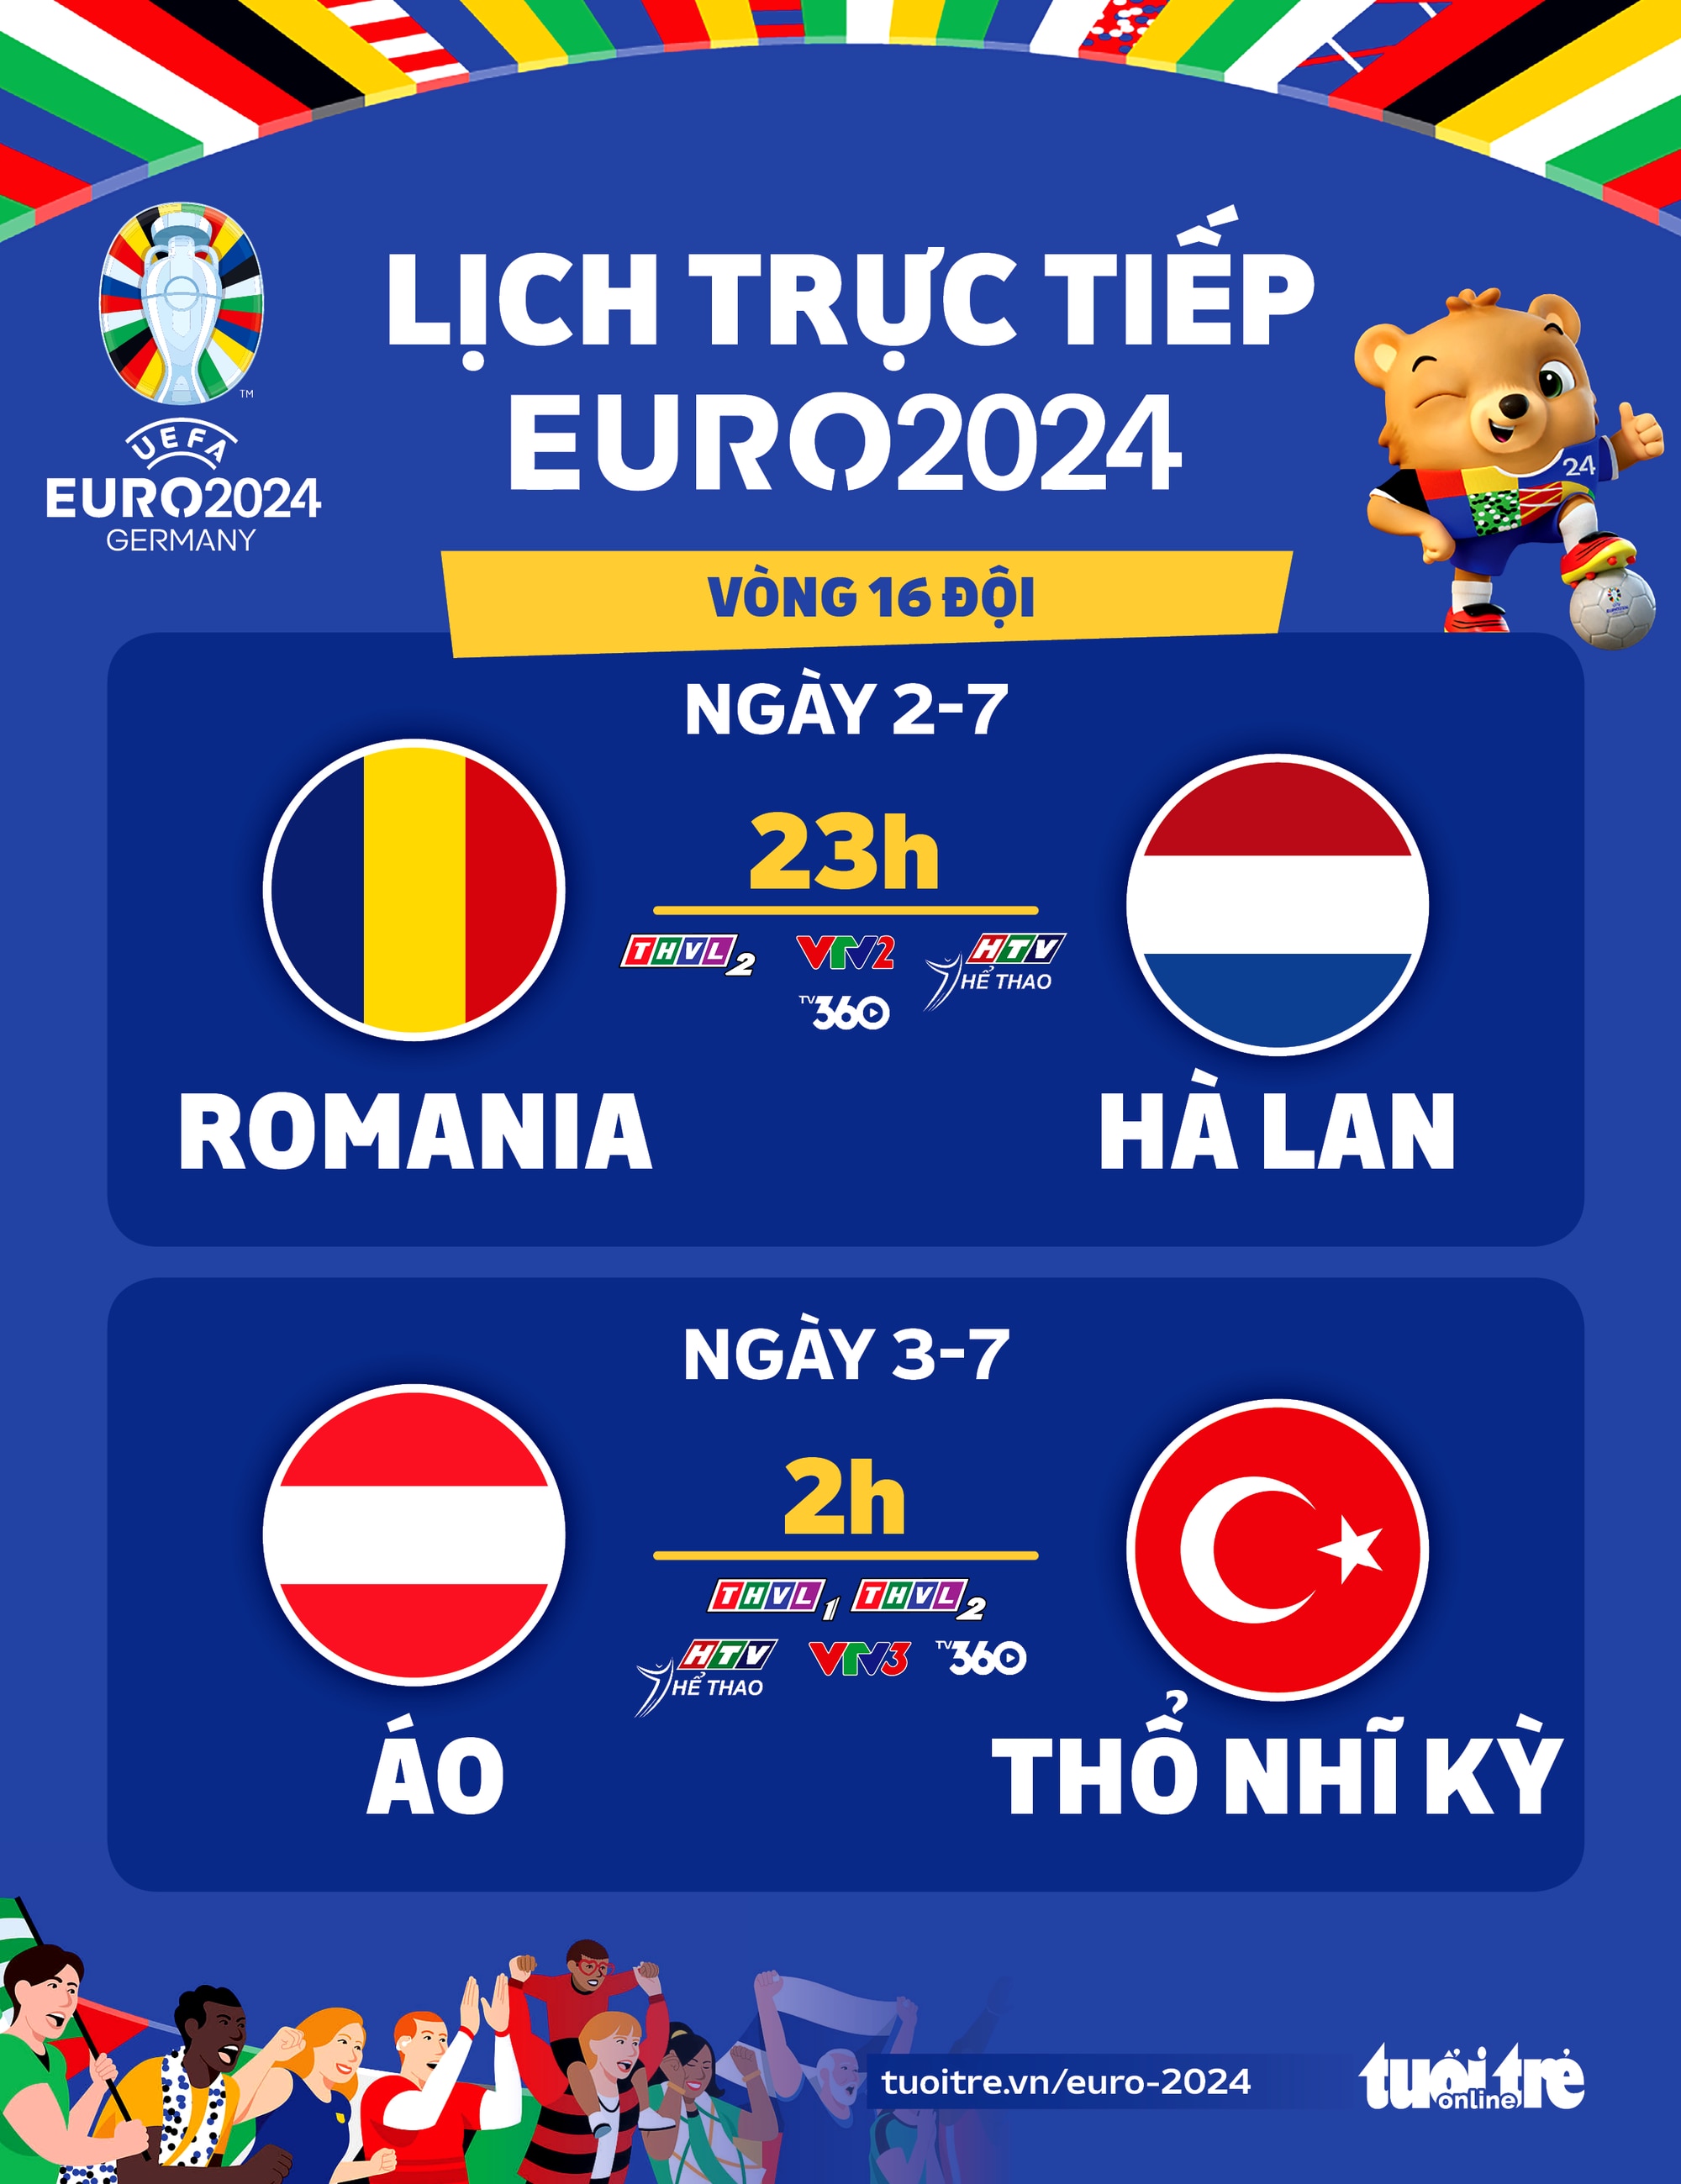 Lịch thi đấu Euro 2024: Romania gặp Hà Lan, Áo đấu với Thổ Nhĩ Kỳ - Đồ họa: AN BÌNH